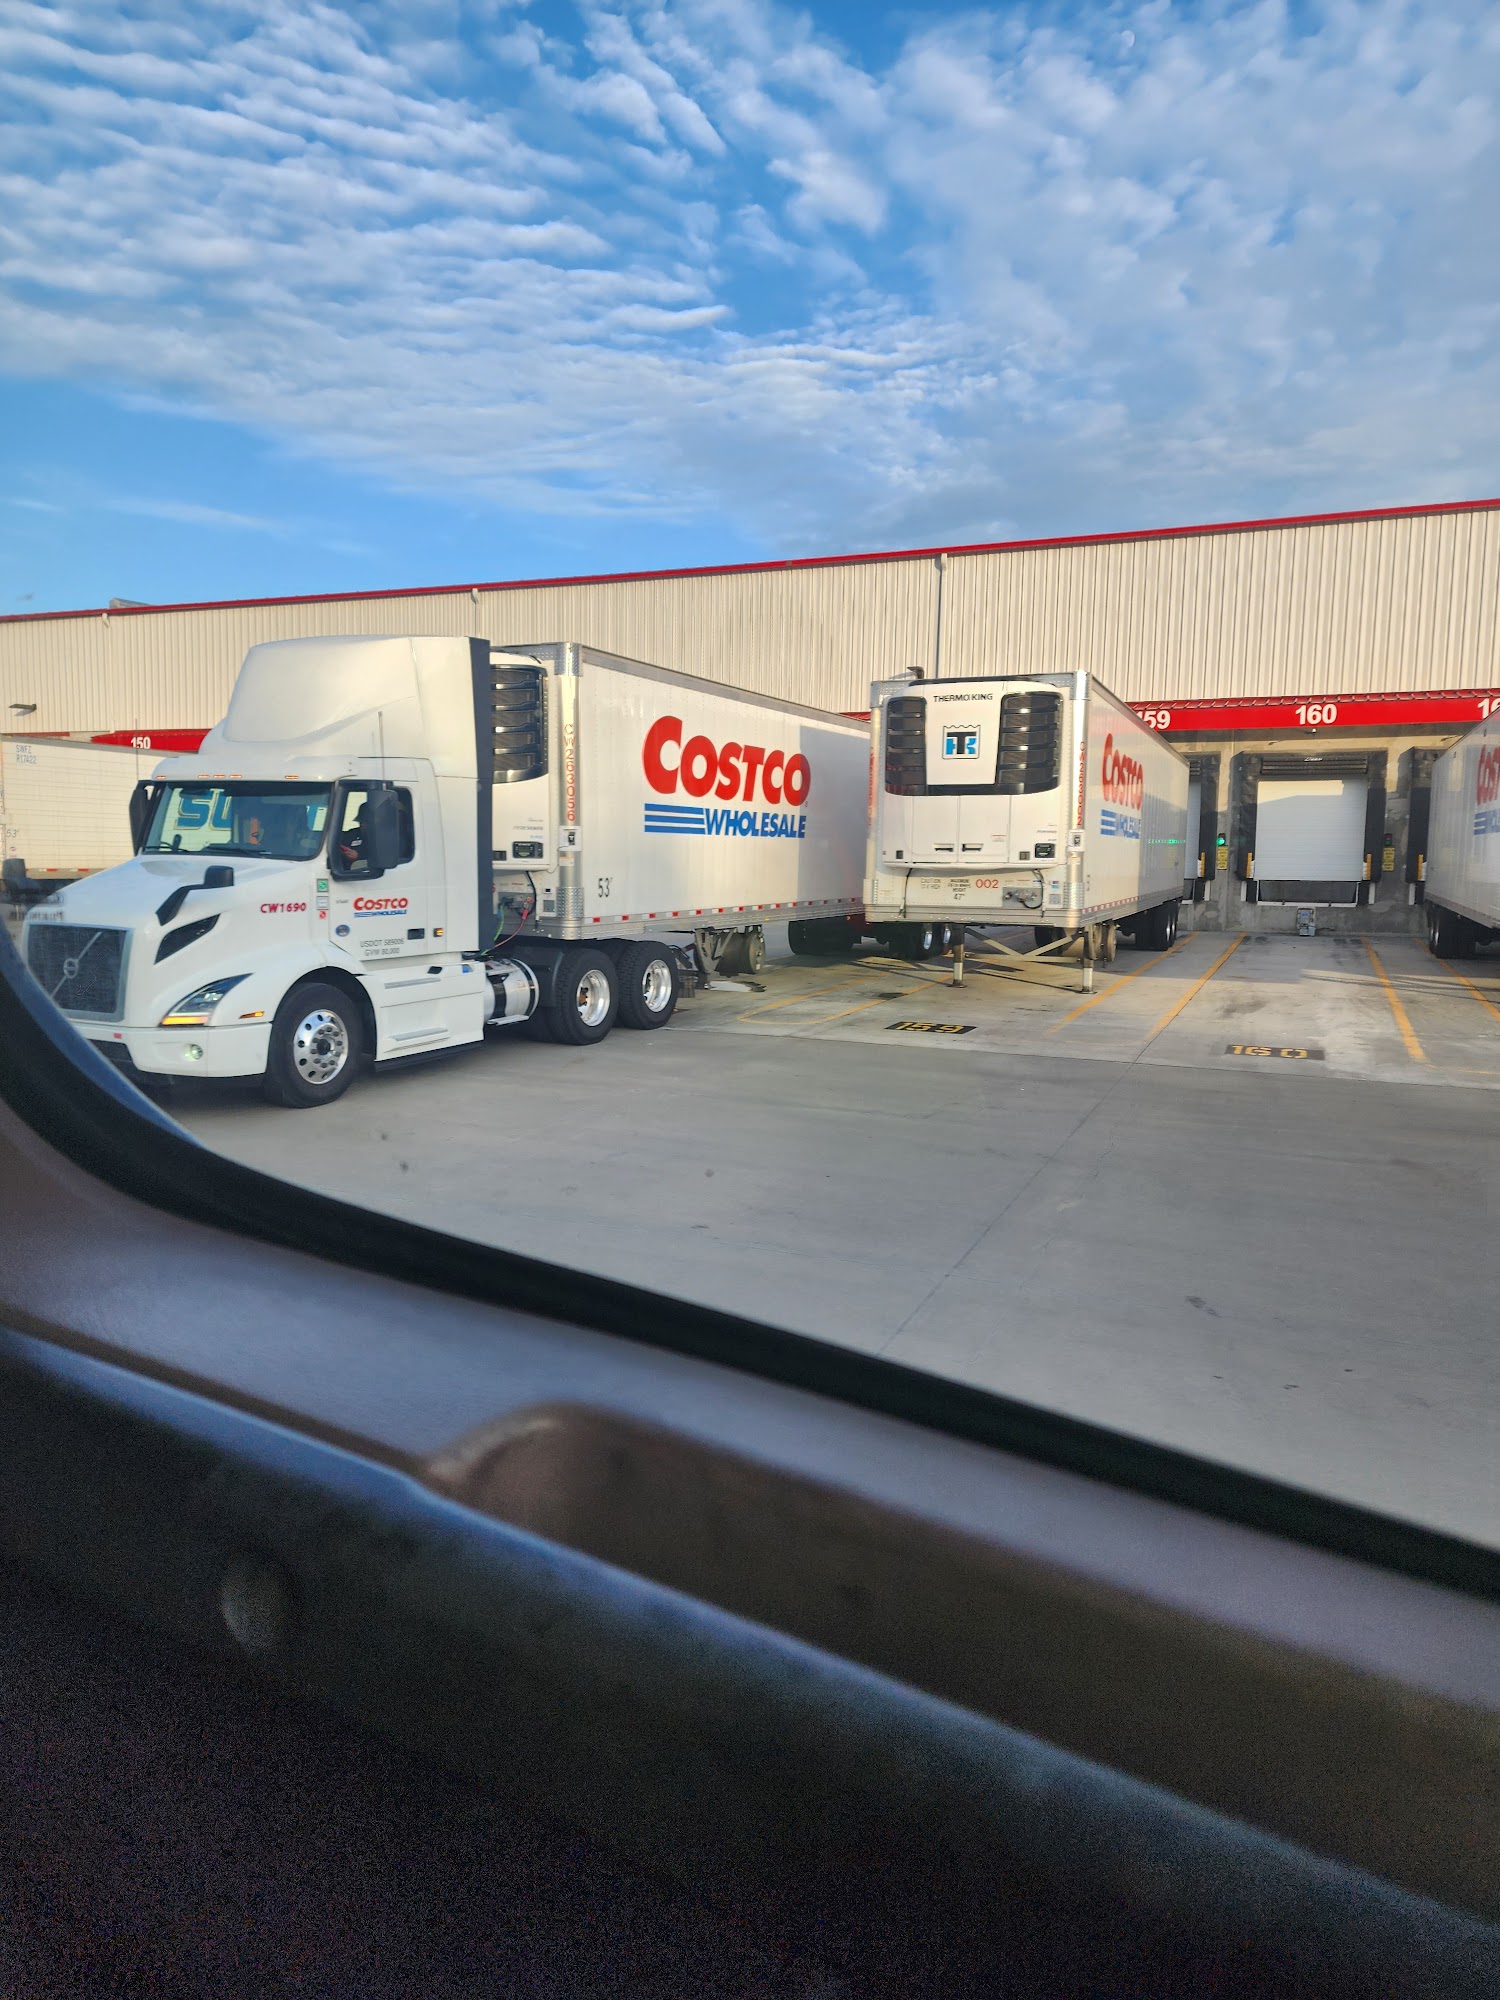 Costco Distribution Center